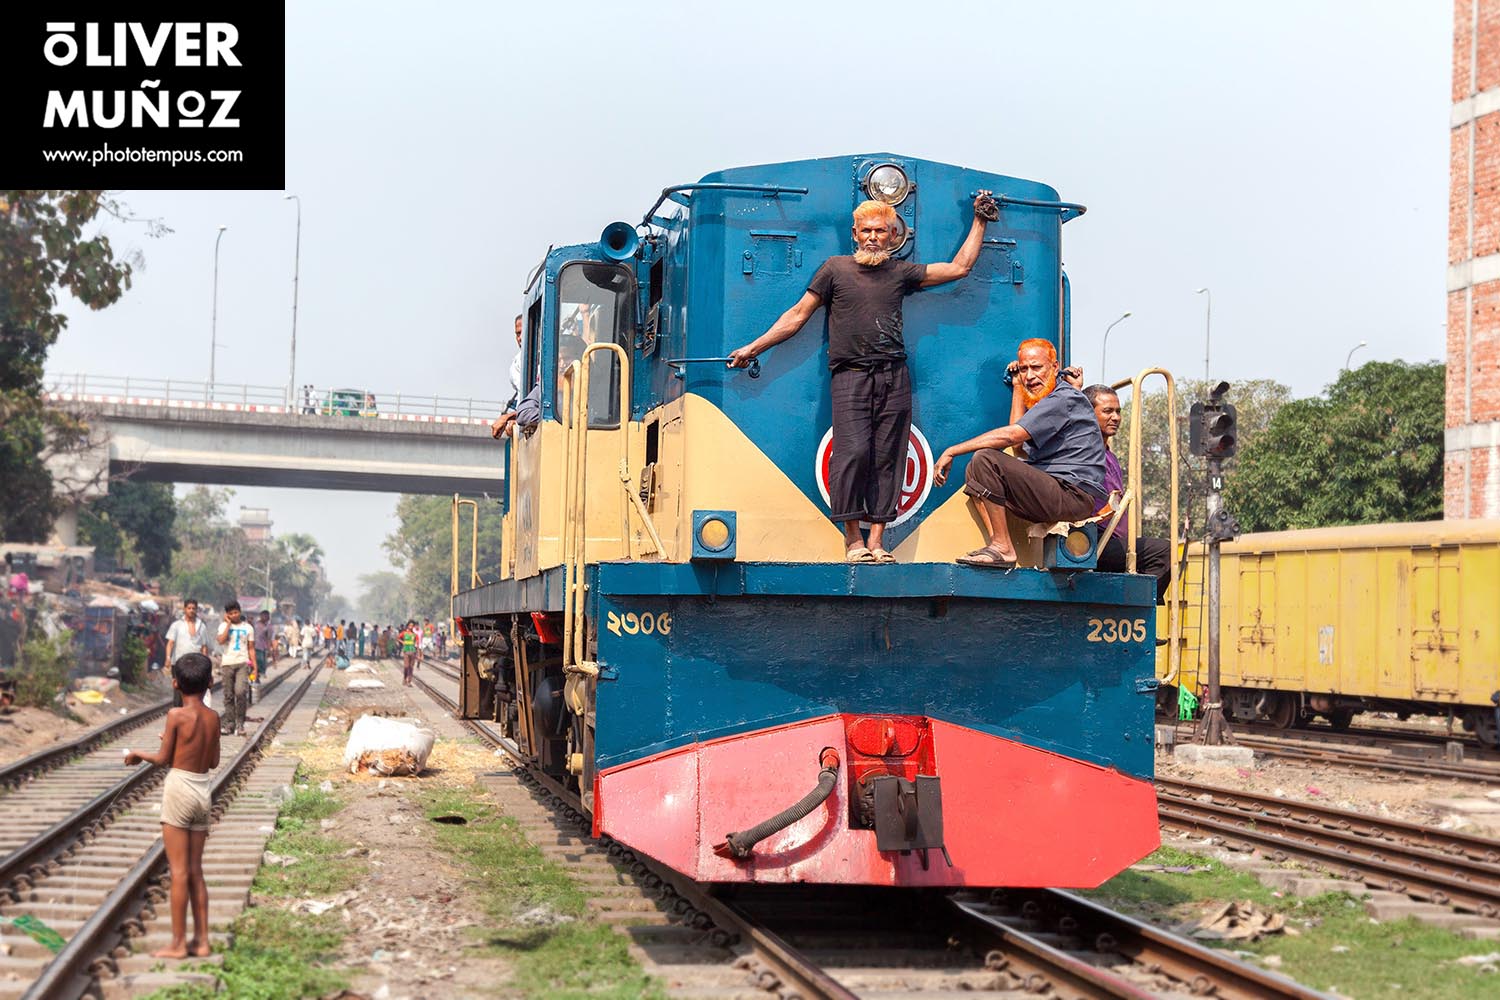 Kaos en Dhaka i com viure amb rates en el ferrocarril